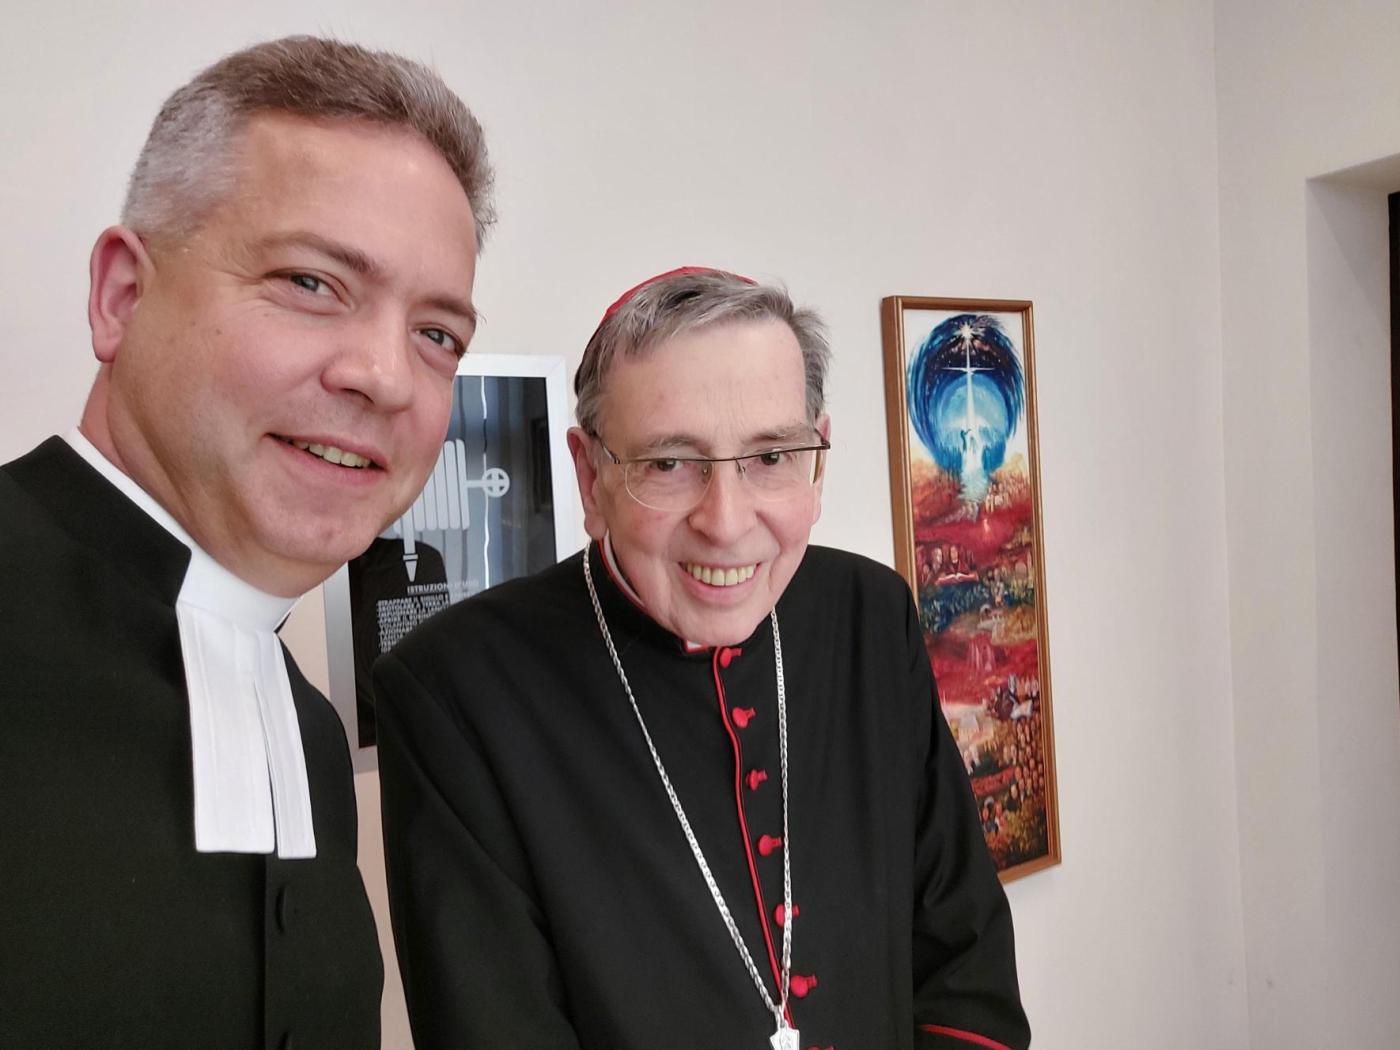 Rev. Lucas Snellmann and Cardinal Kurt Koch